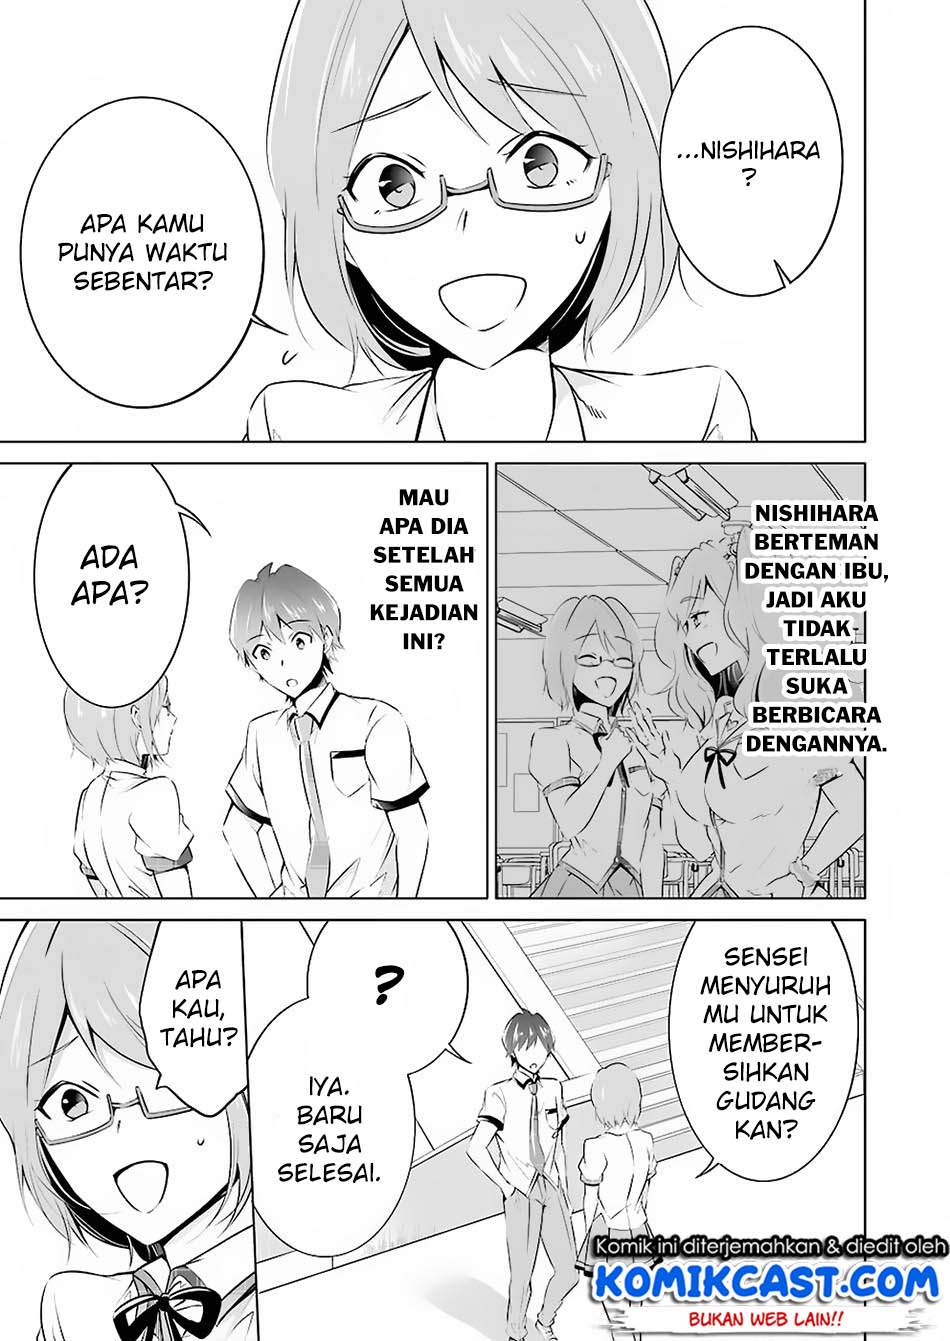 Chuuko demo Koi ga Shitai! Chapter 37 Bahasa Indonesia